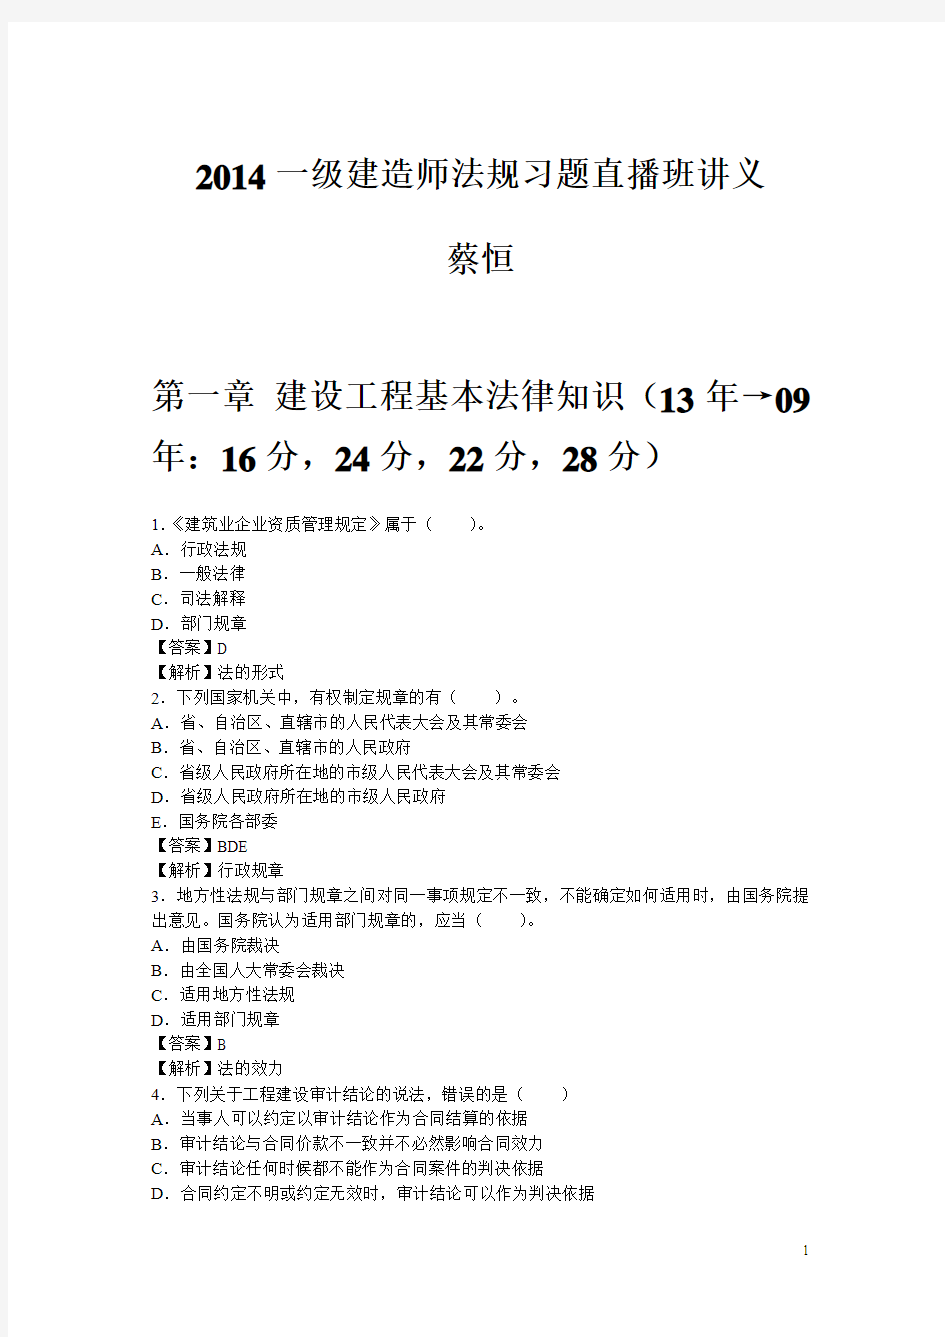 2014一建-法规及相关知识-习题班-蔡恒-讲义